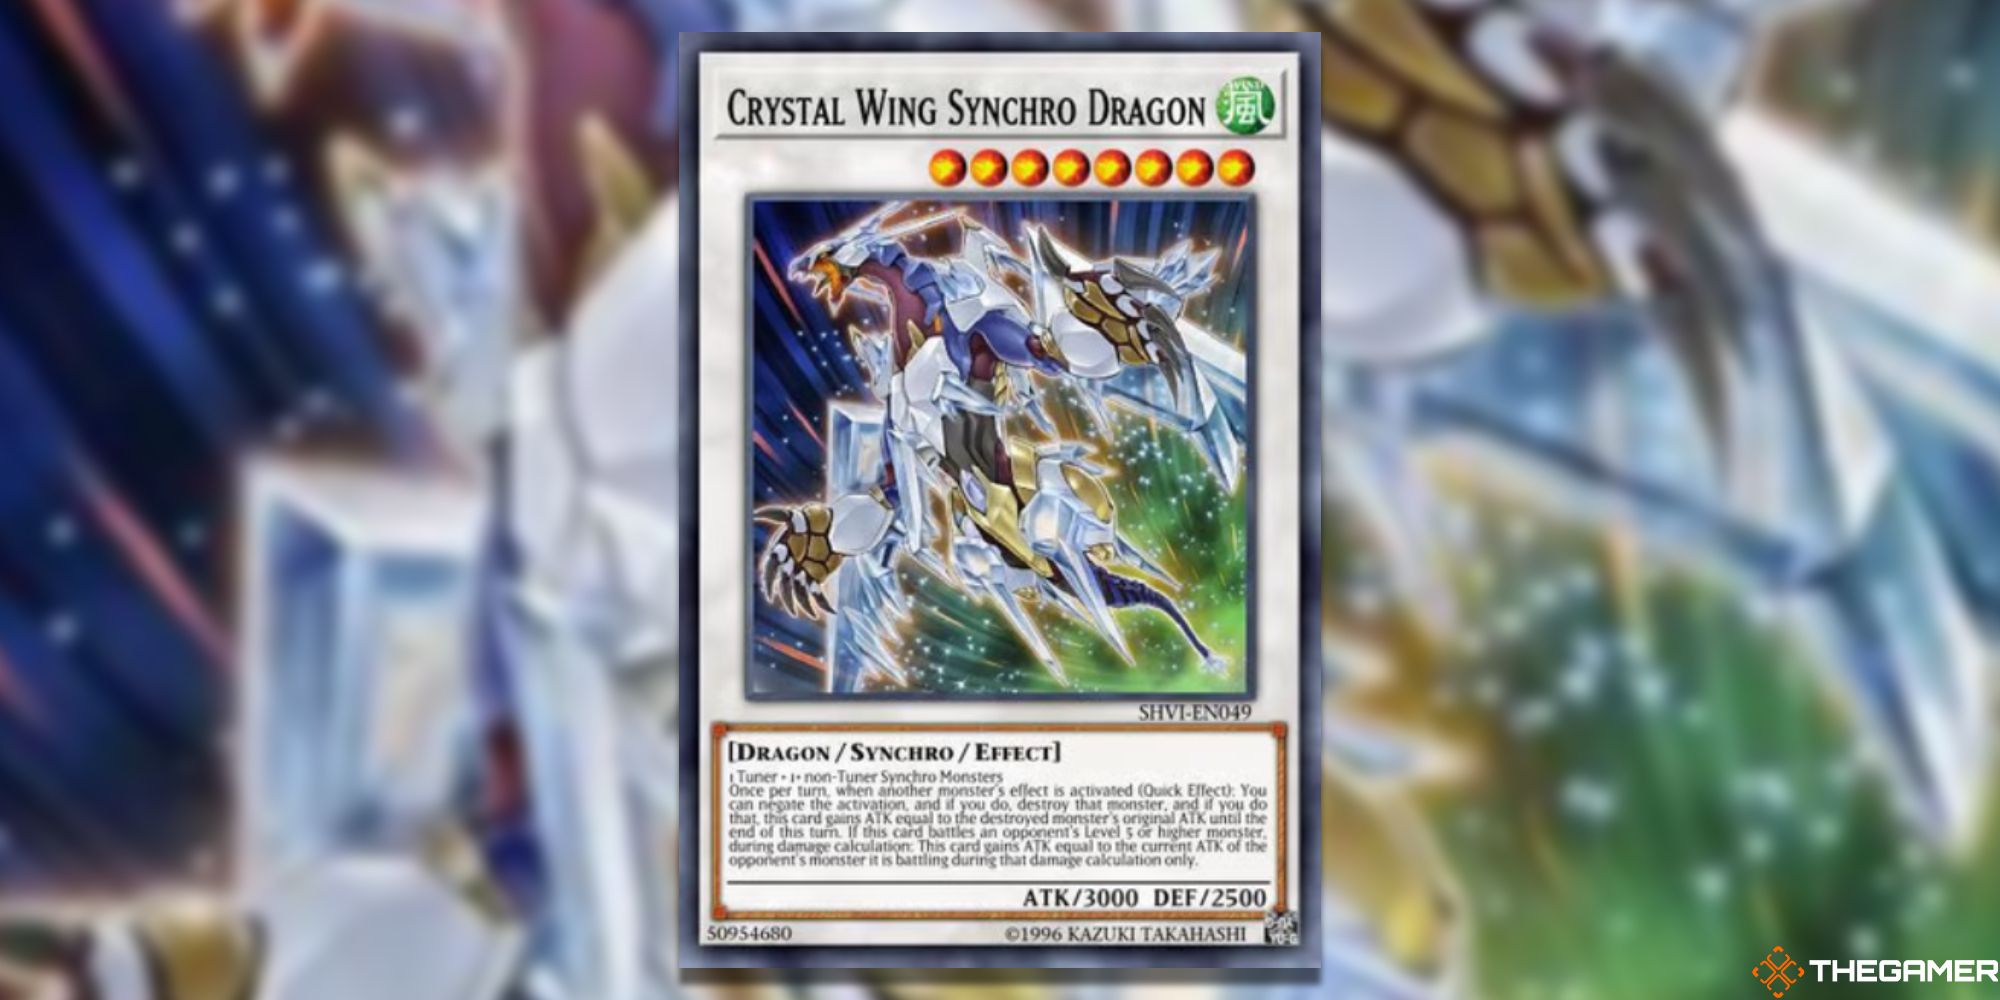 Yu-Gi-Oh! Crystal Wing Synchro Dragon on blurred background